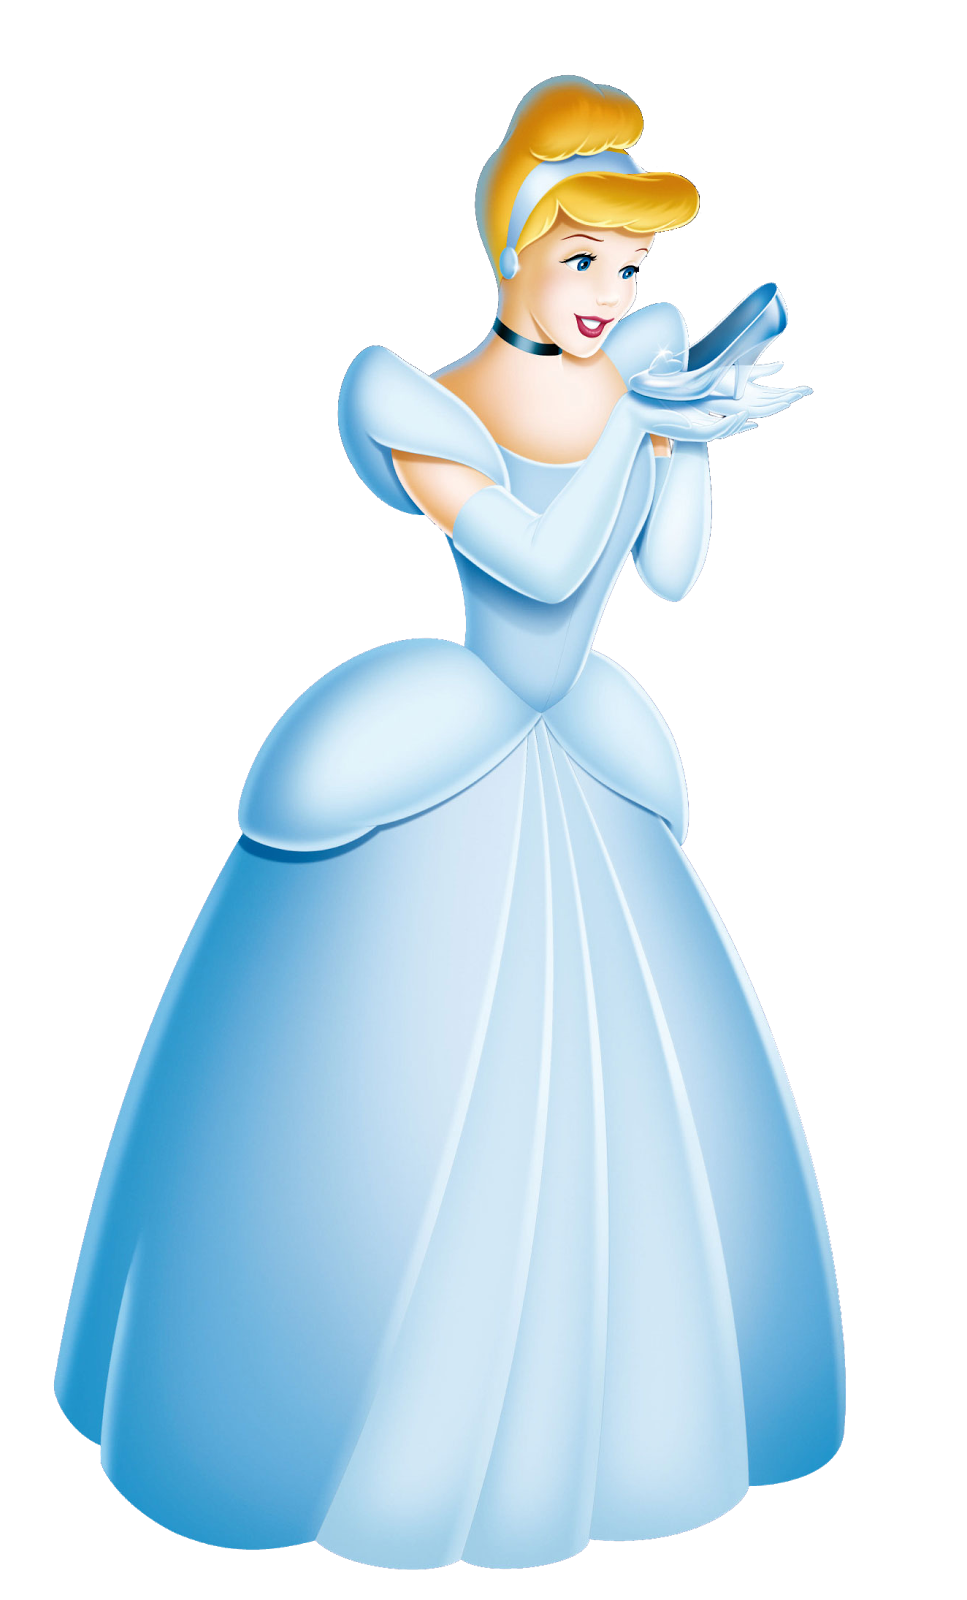 Cinderella (Disney) | Heroes Wiki | FANDOM powered by Wikia